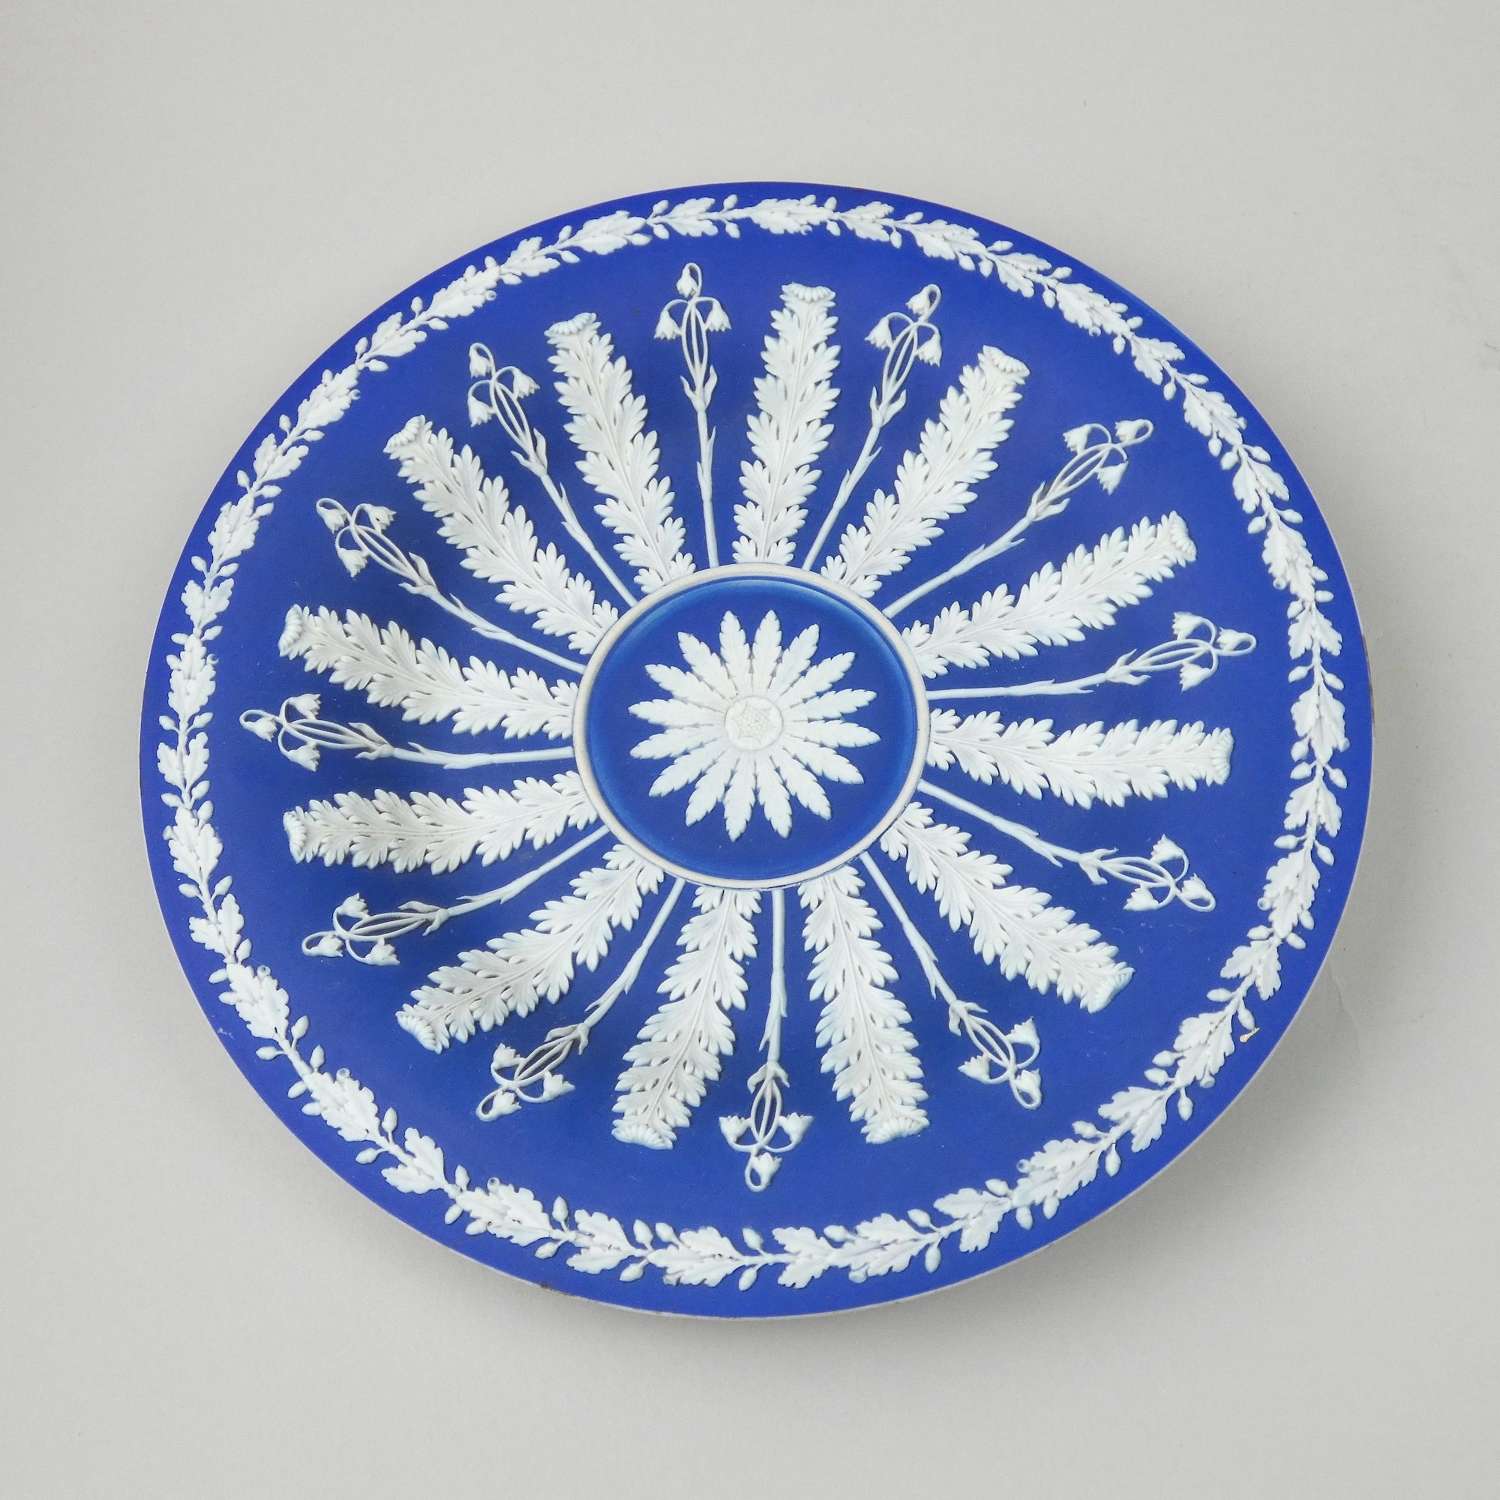 Blue jasper cabinet plate